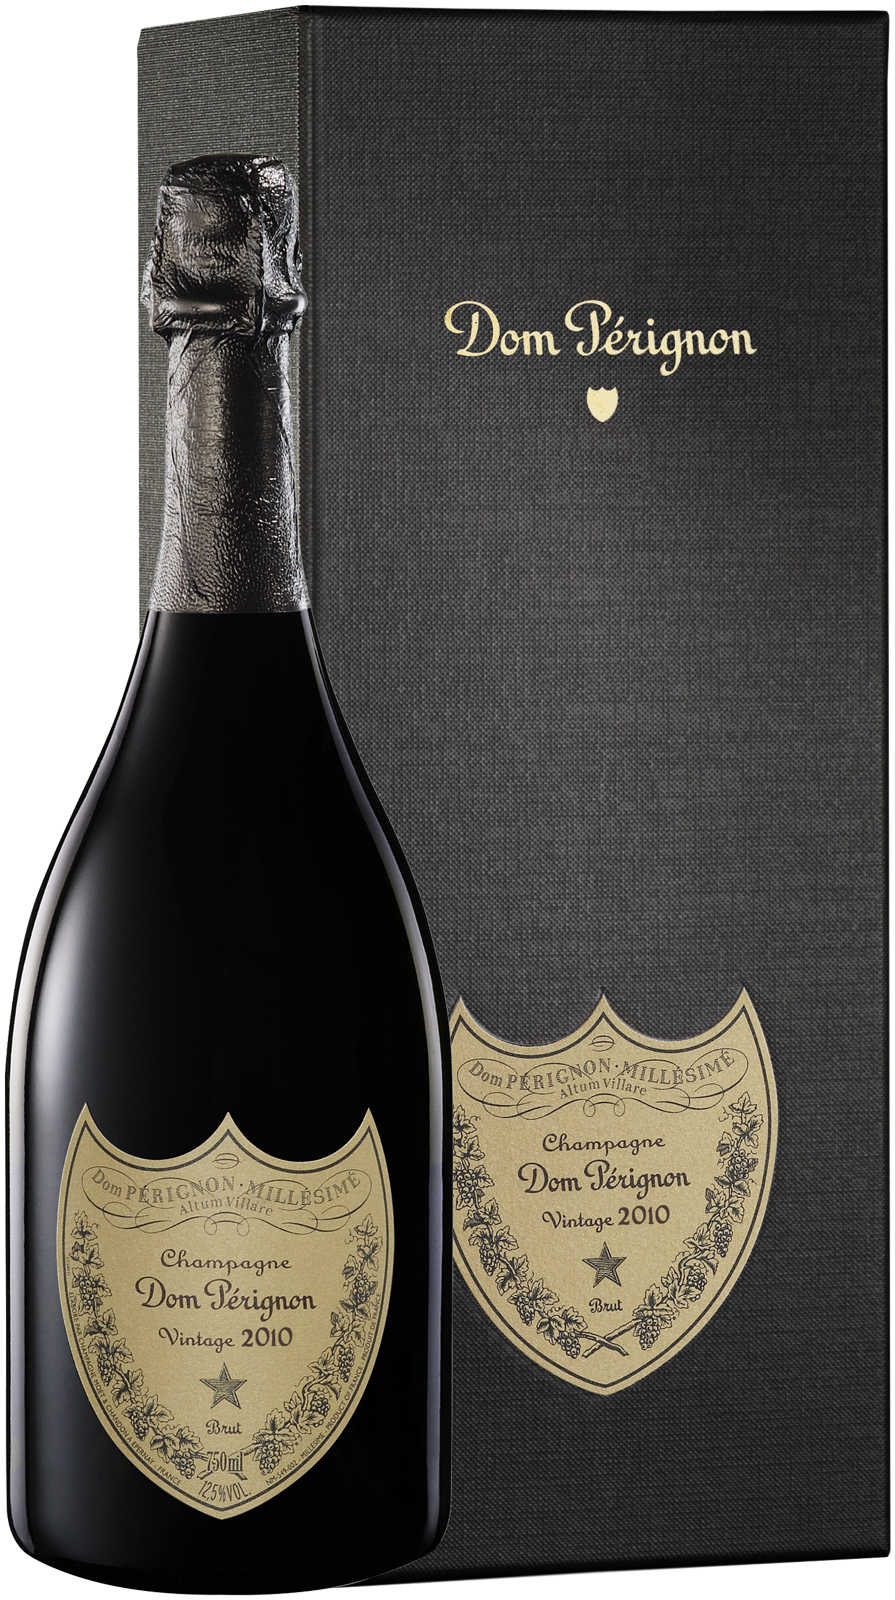 Dom prignon en coffret 2010  Moet et chandon, Champagne